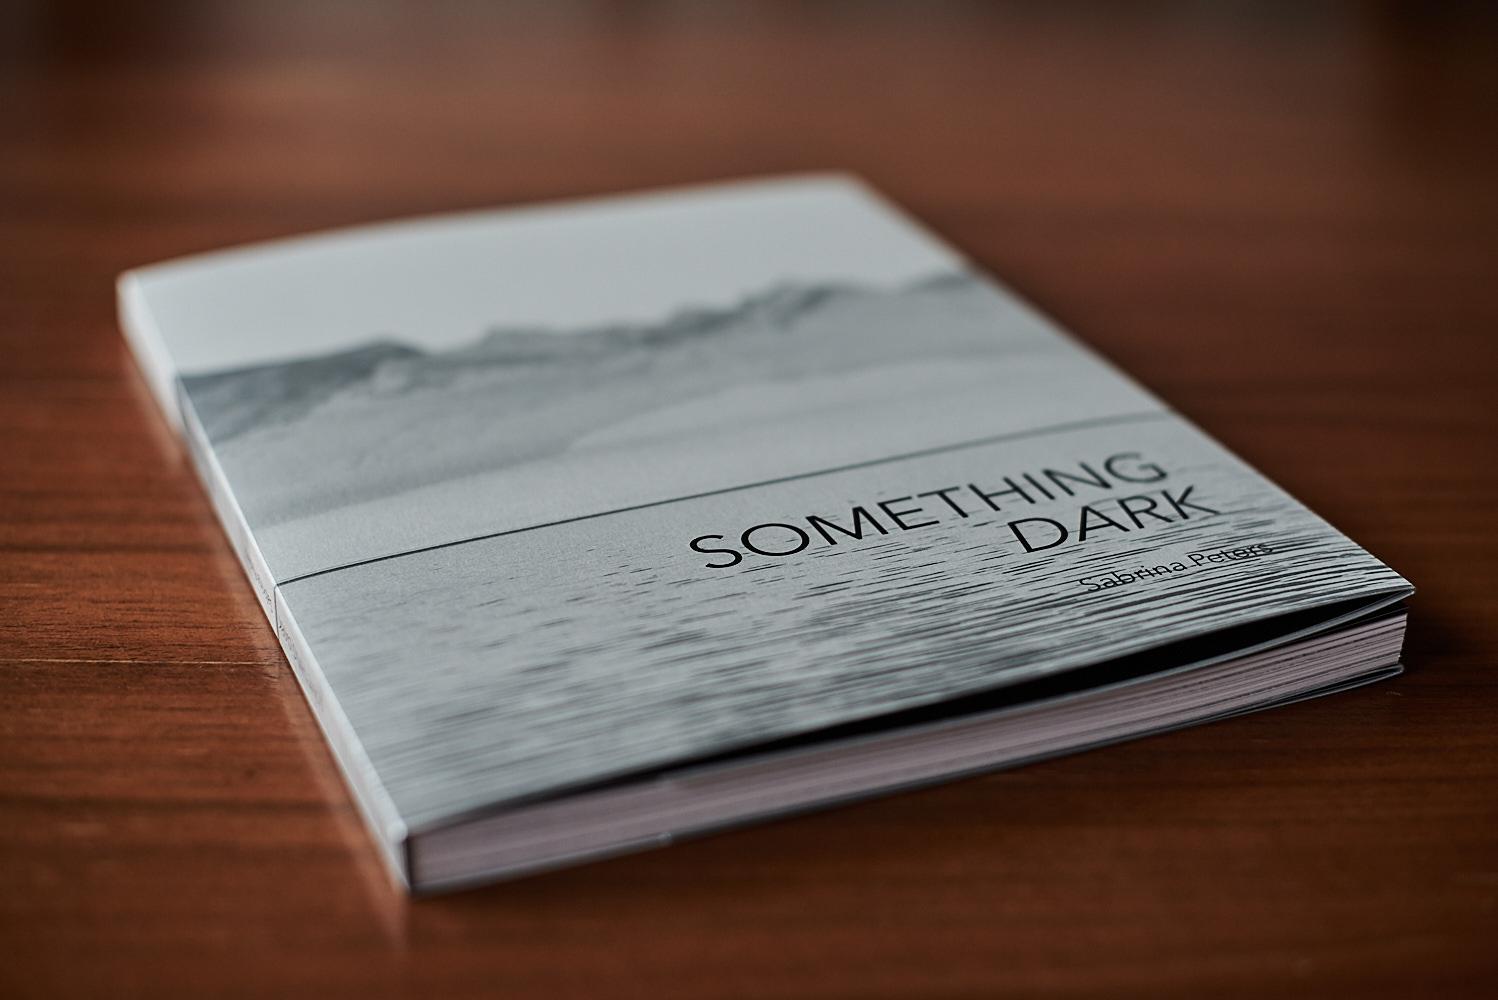 Buchcover von "Something Dark"